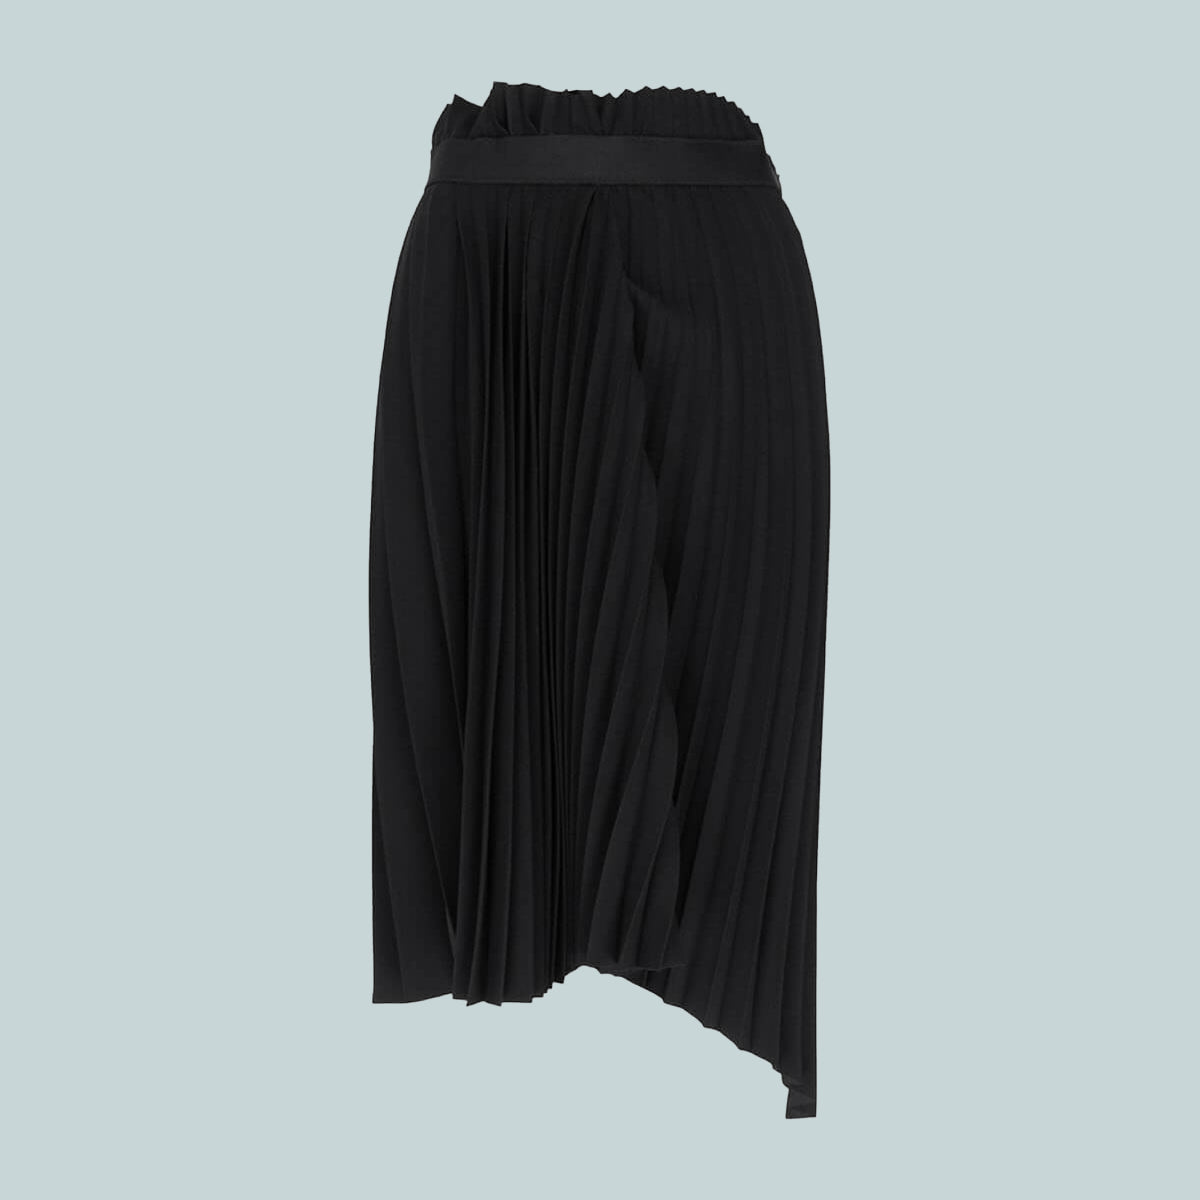 Fancy pleated skirt